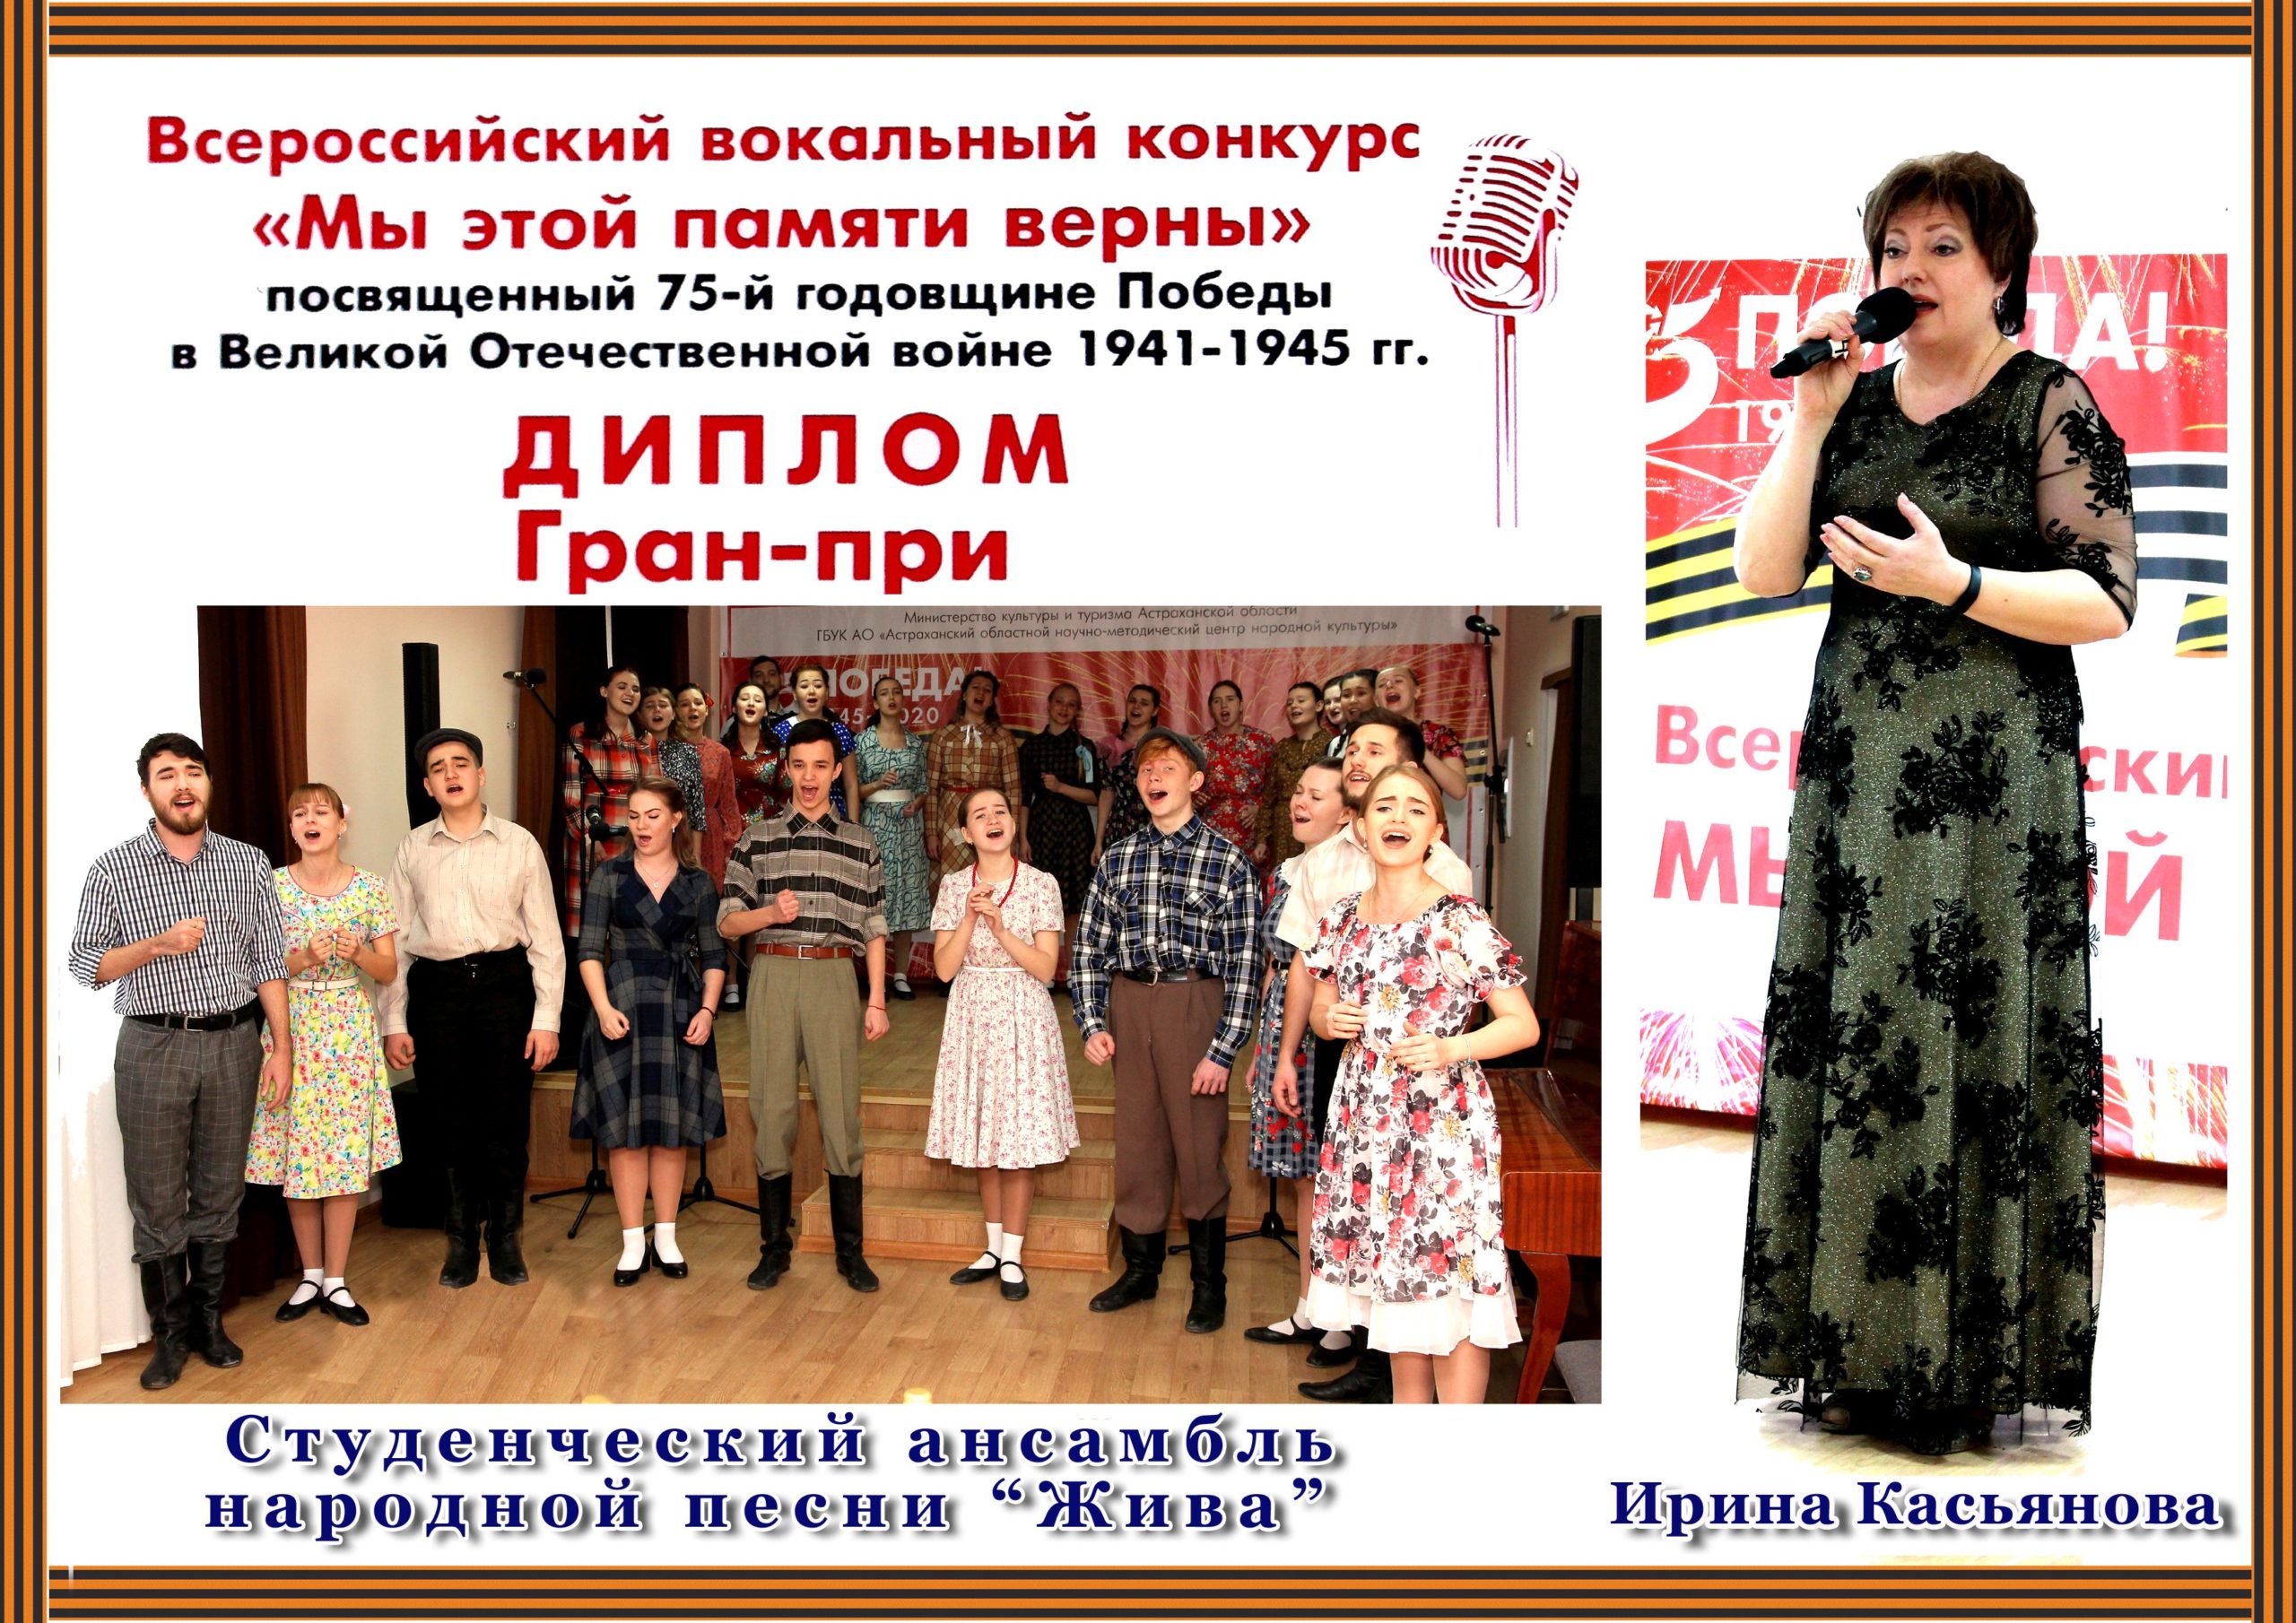 Определены обладатели Гран-при Всероссийского вокального конкурса  «Мы этой памяти верны»